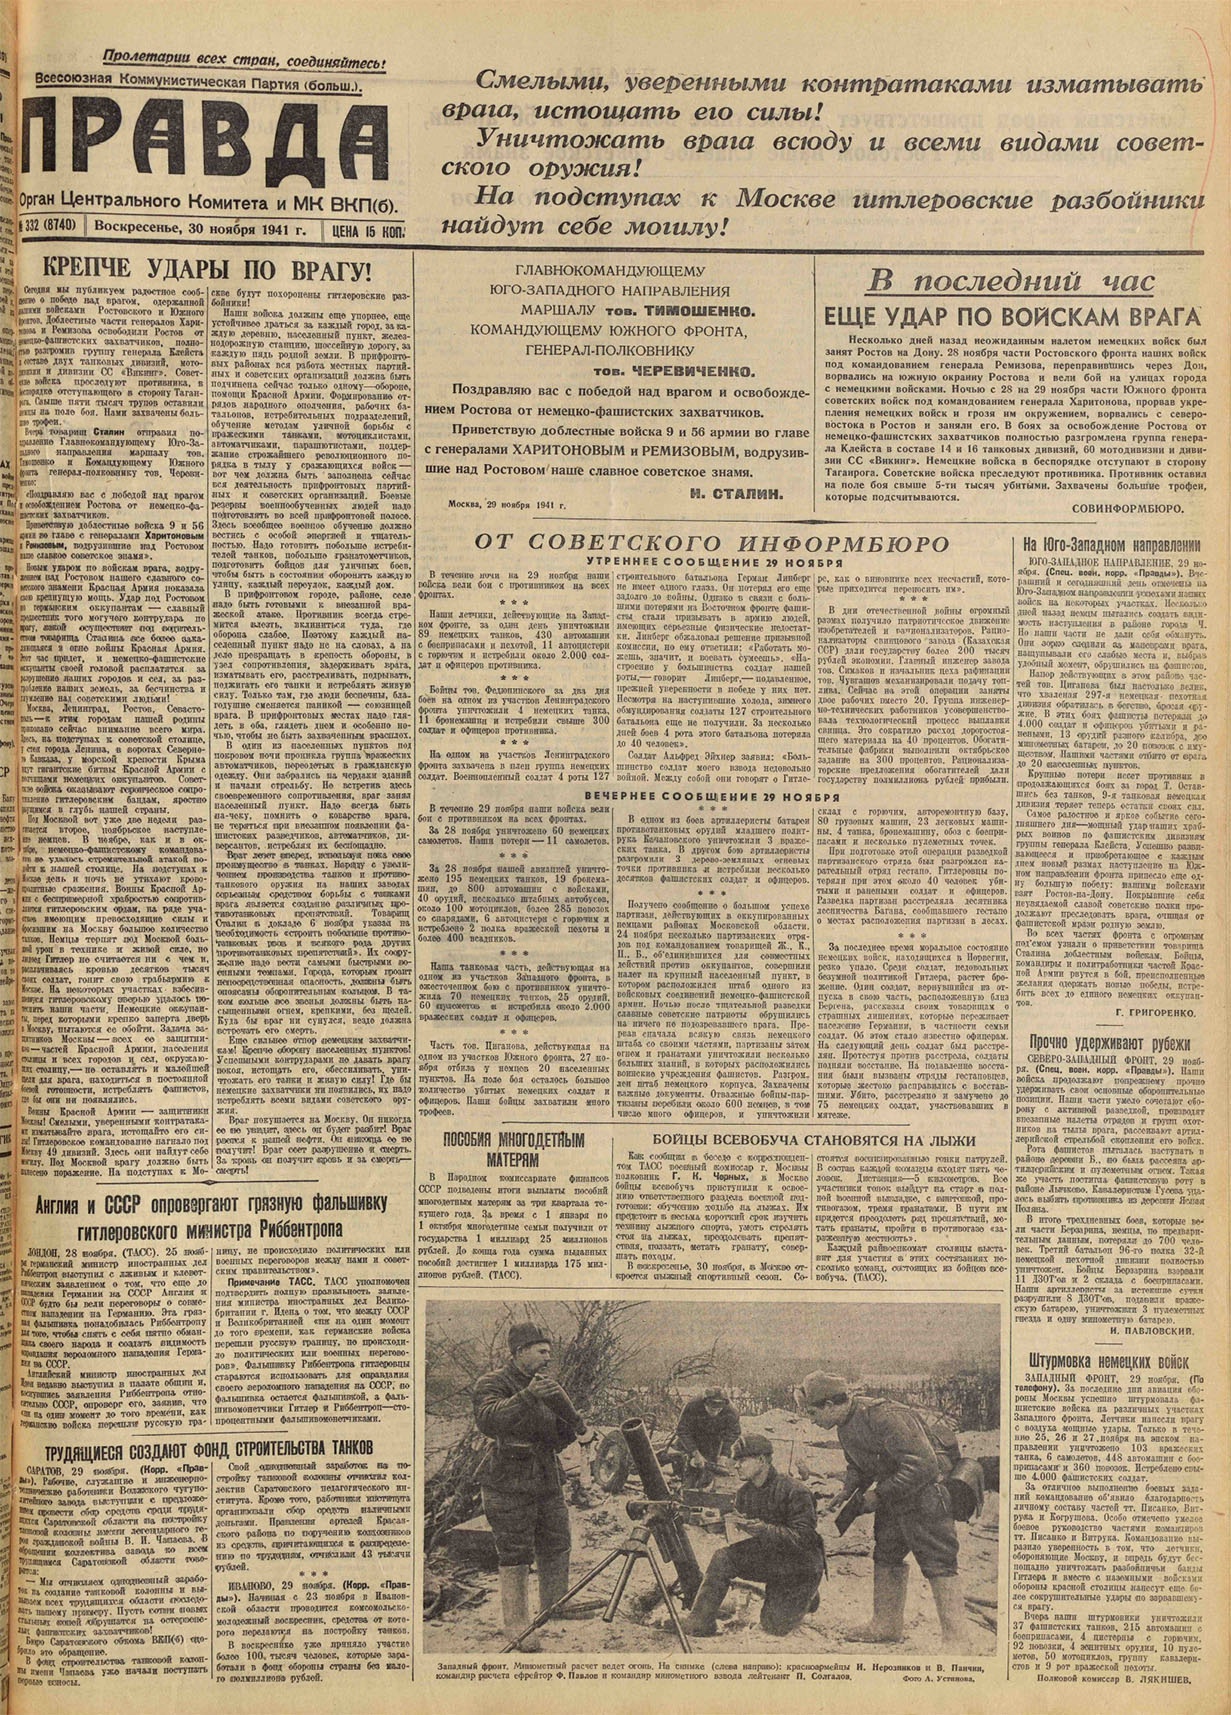 Газета «Правда» 30 ноября 1941 года опубликовала сообщение Совинформбюро посвящённое разгрому штаба 12 армейского корпуса вермахта в Угодско-Заводском районе.